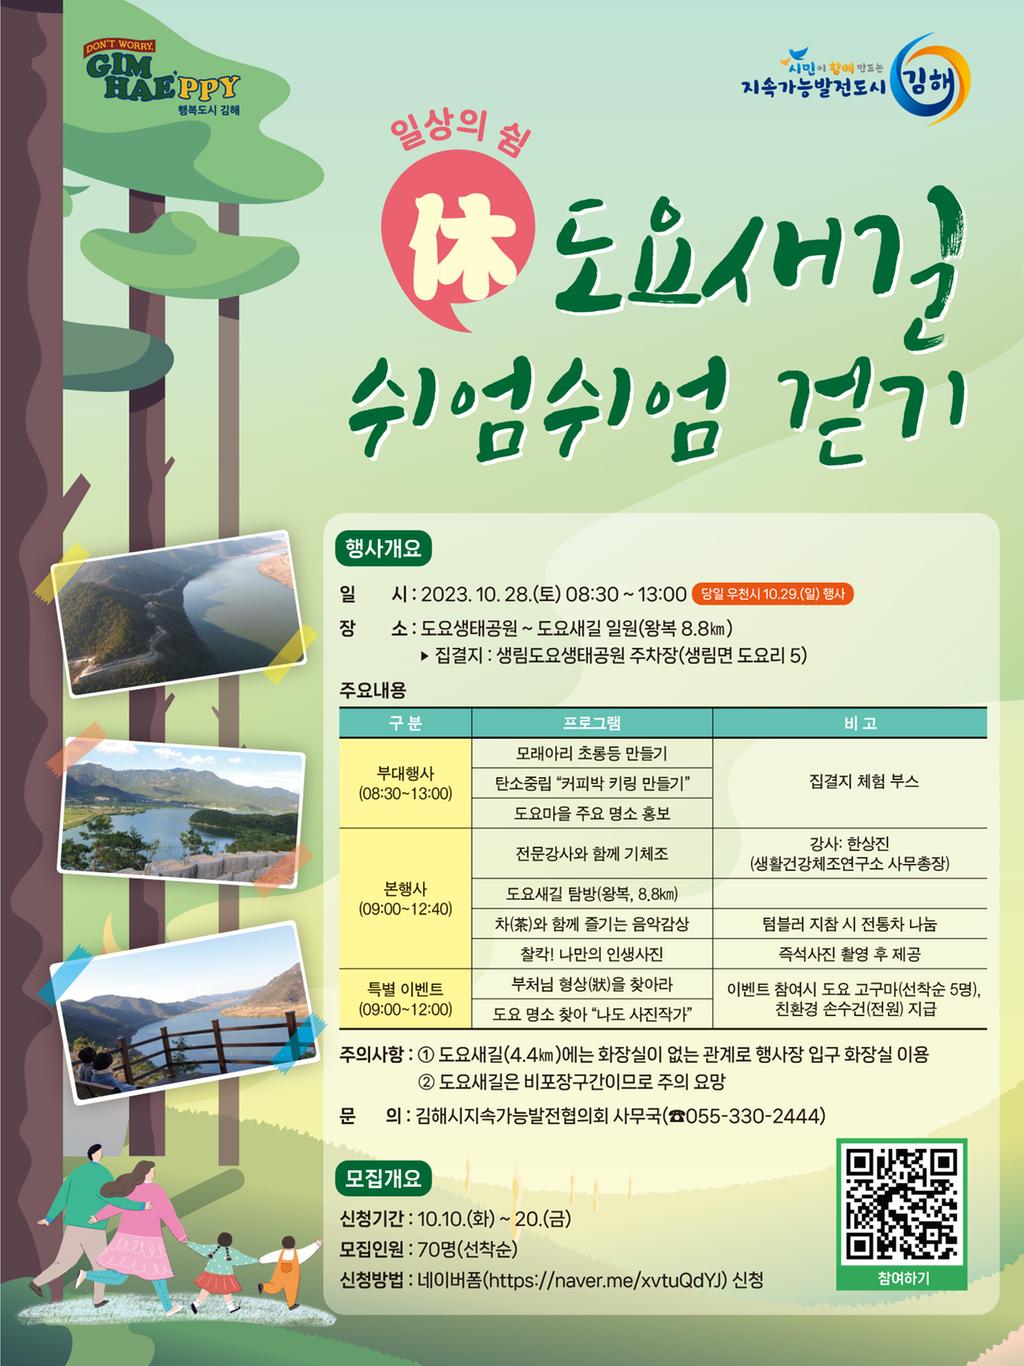 행사 안내 포스터 